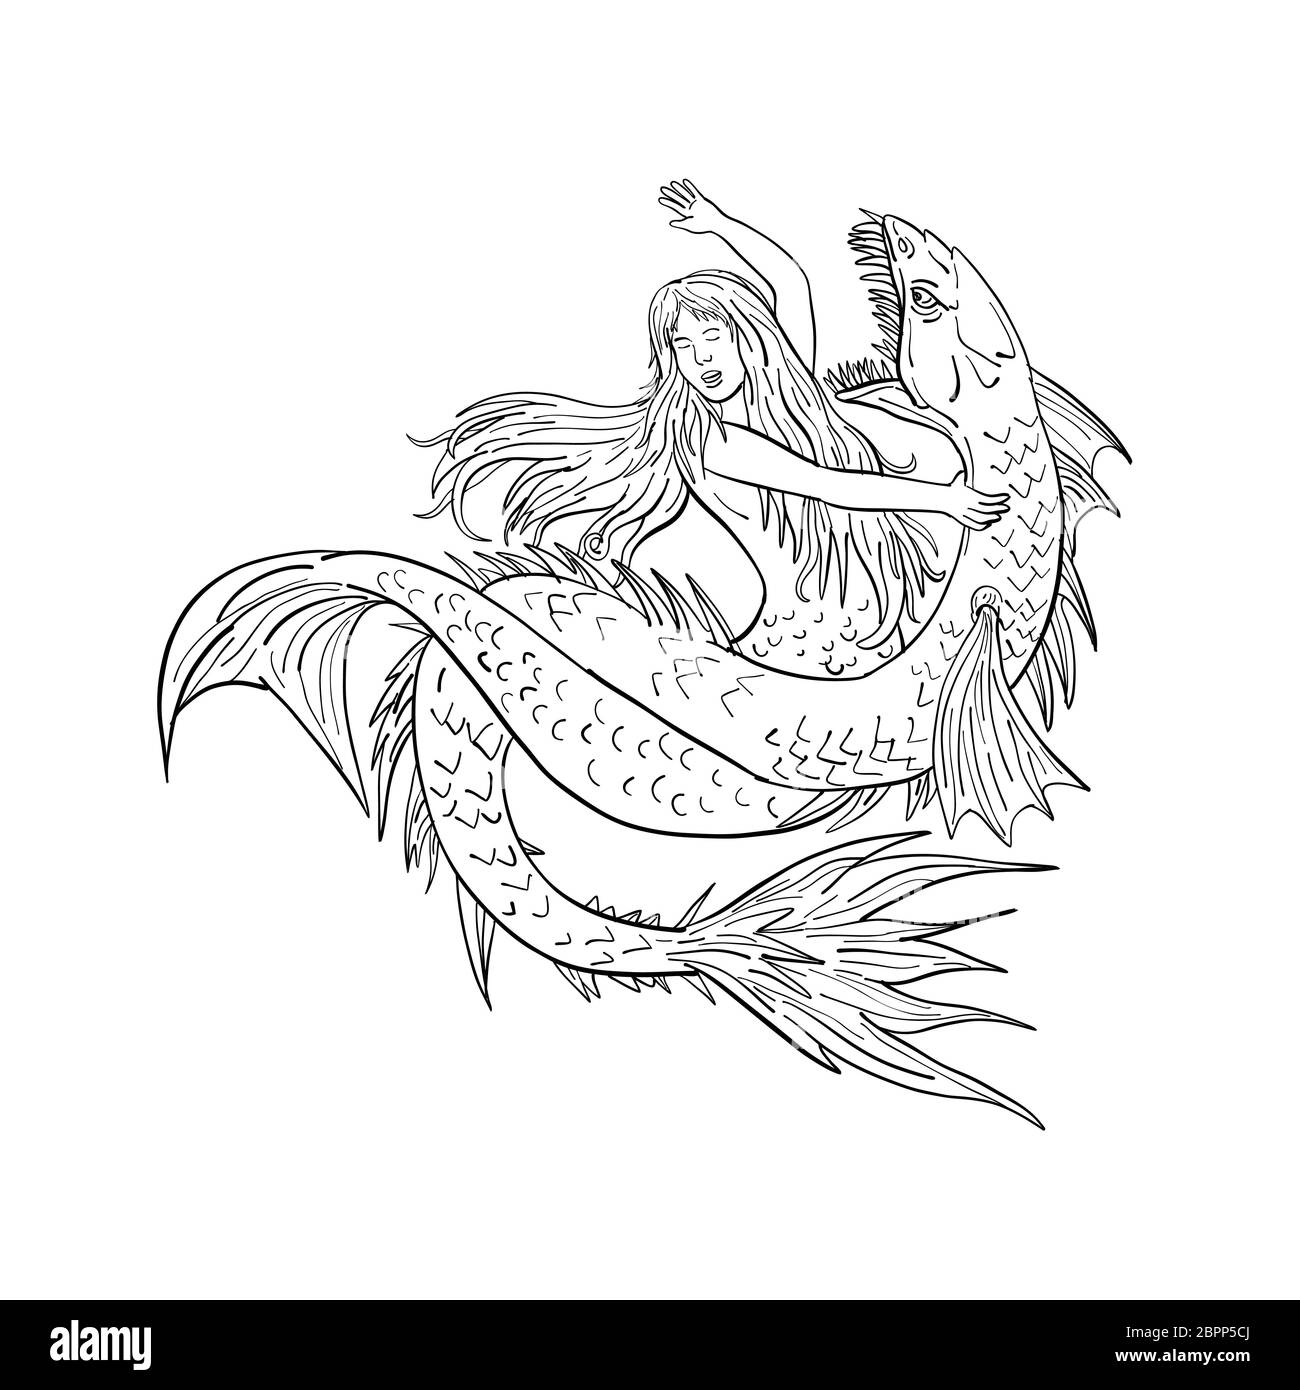 Croquis dessin illustration d'un style ou une sirène siren combats ou aux prises avec un serpent de mer ou monstre isolé sur fond blanc dans un noir Banque D'Images